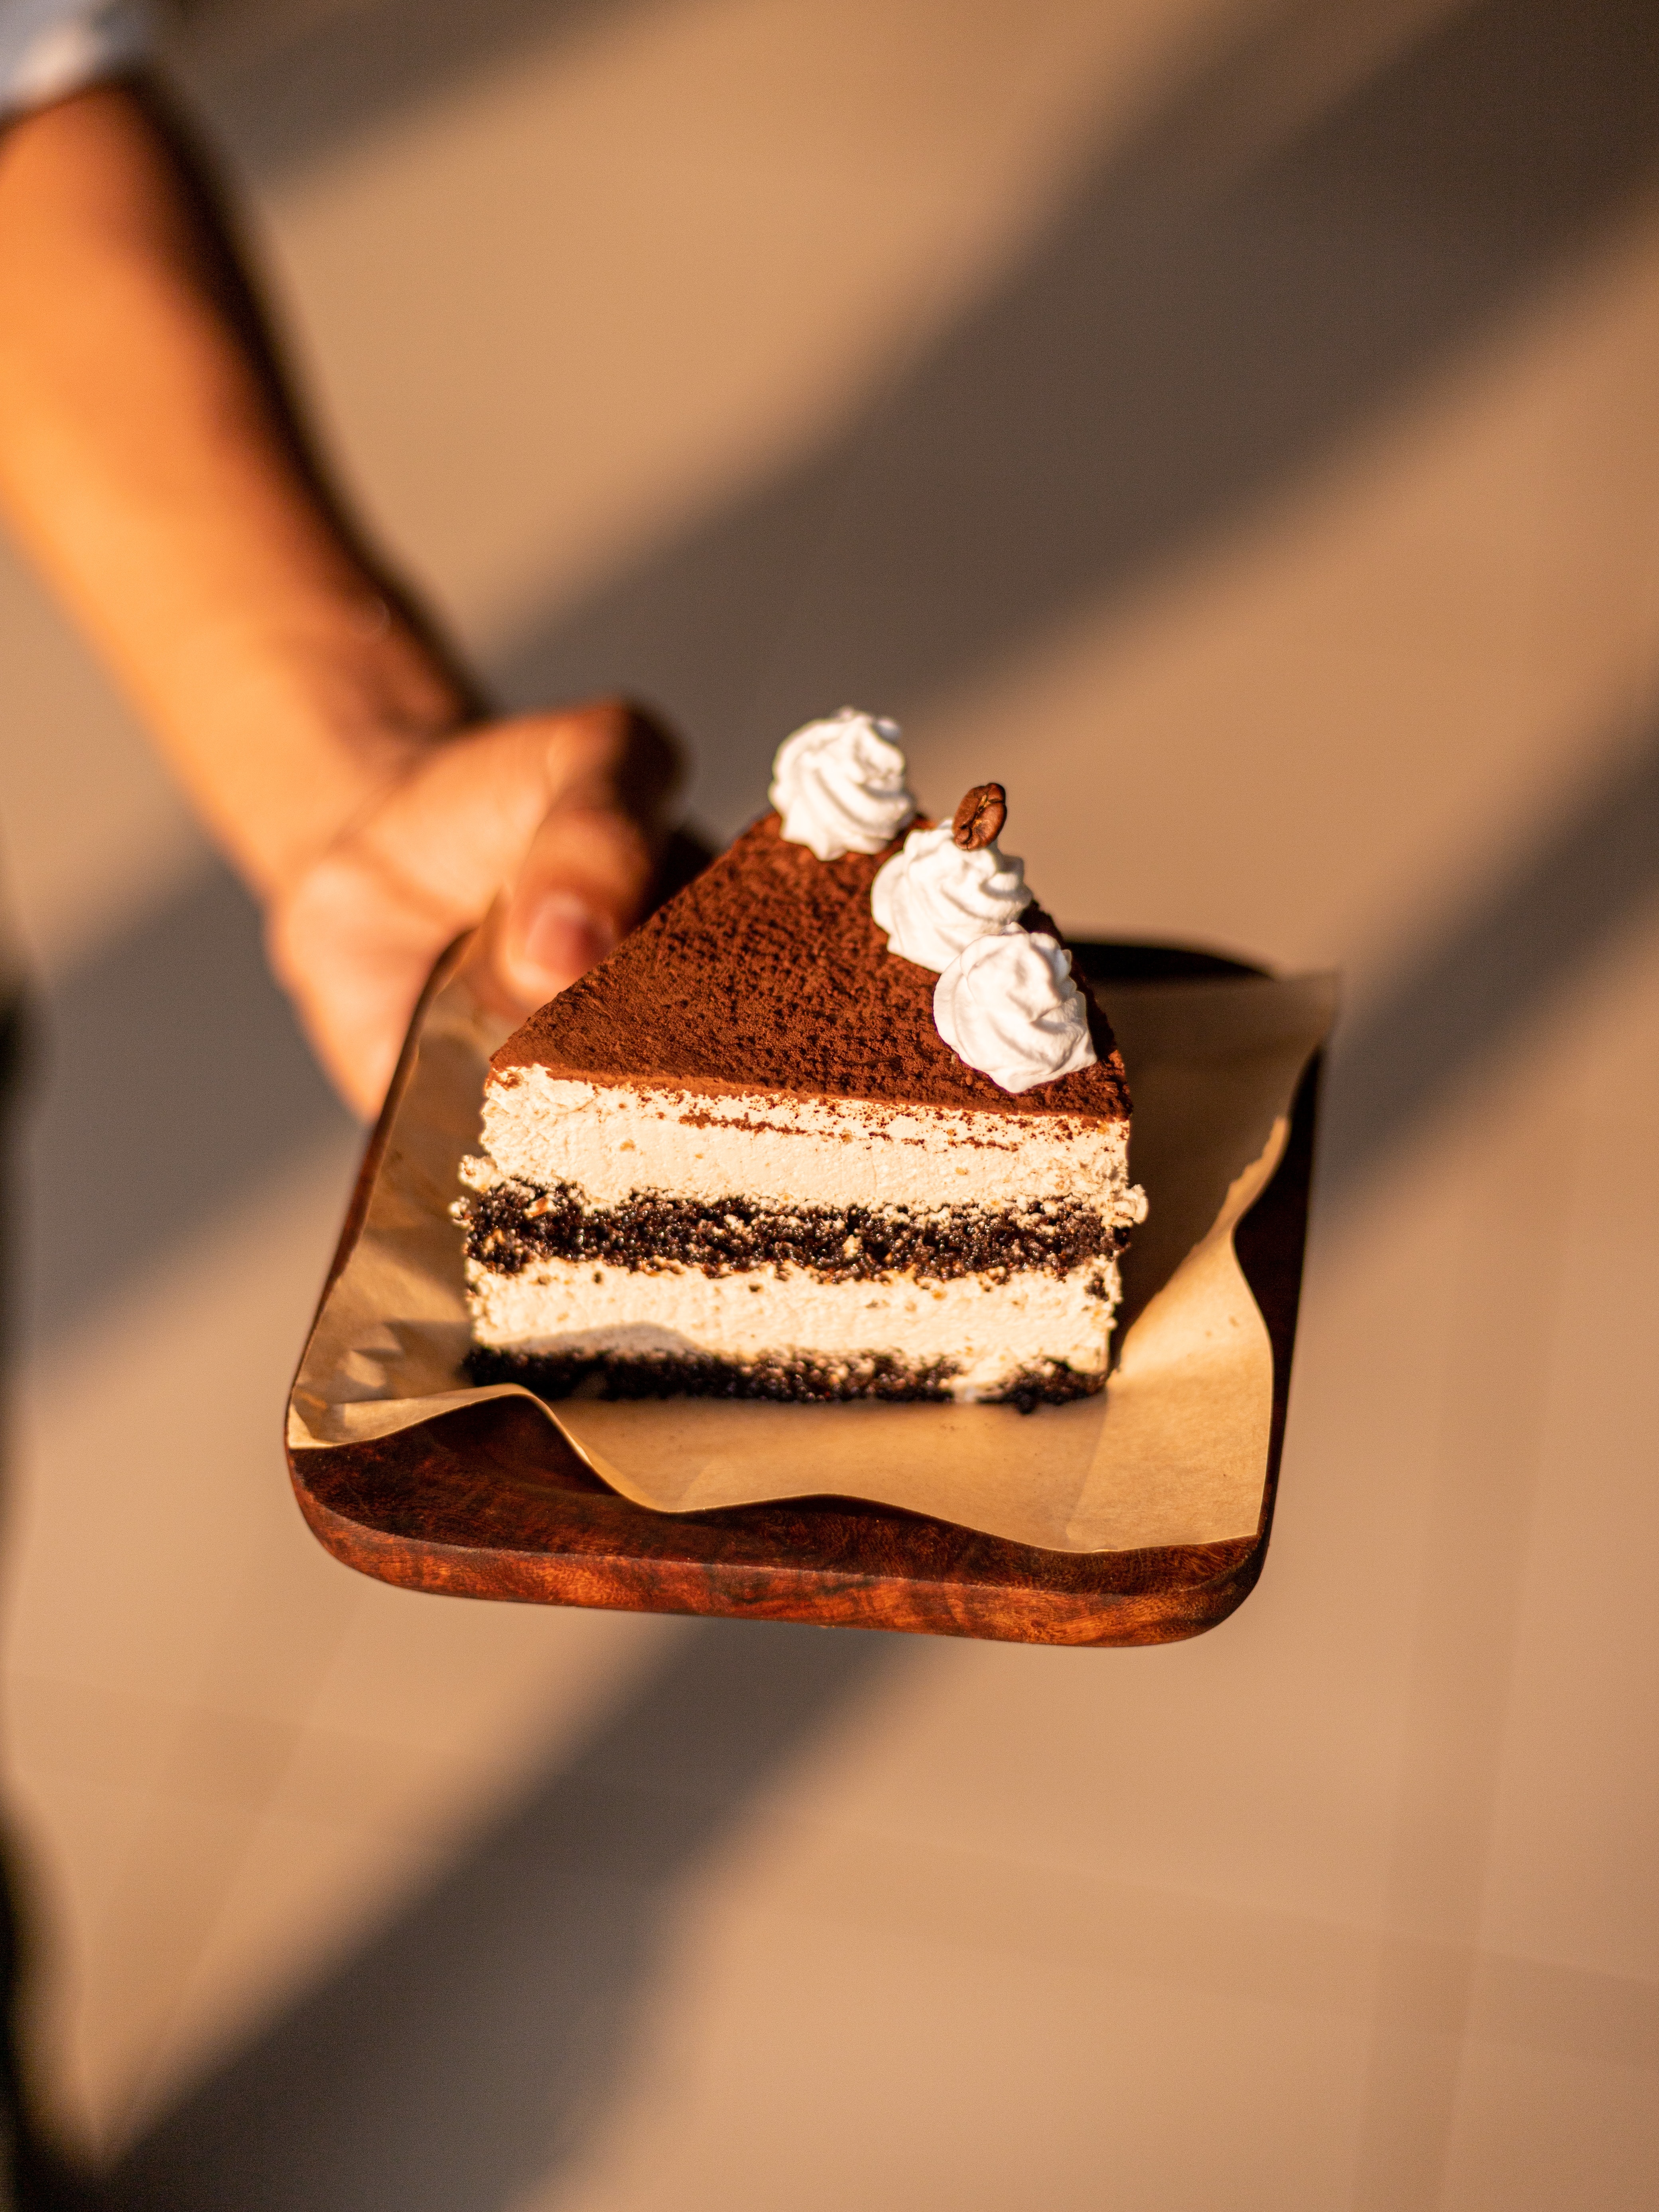 Tiramisú: ¿Es mejor el pastel de Neufeld o el pastel de El Globo?